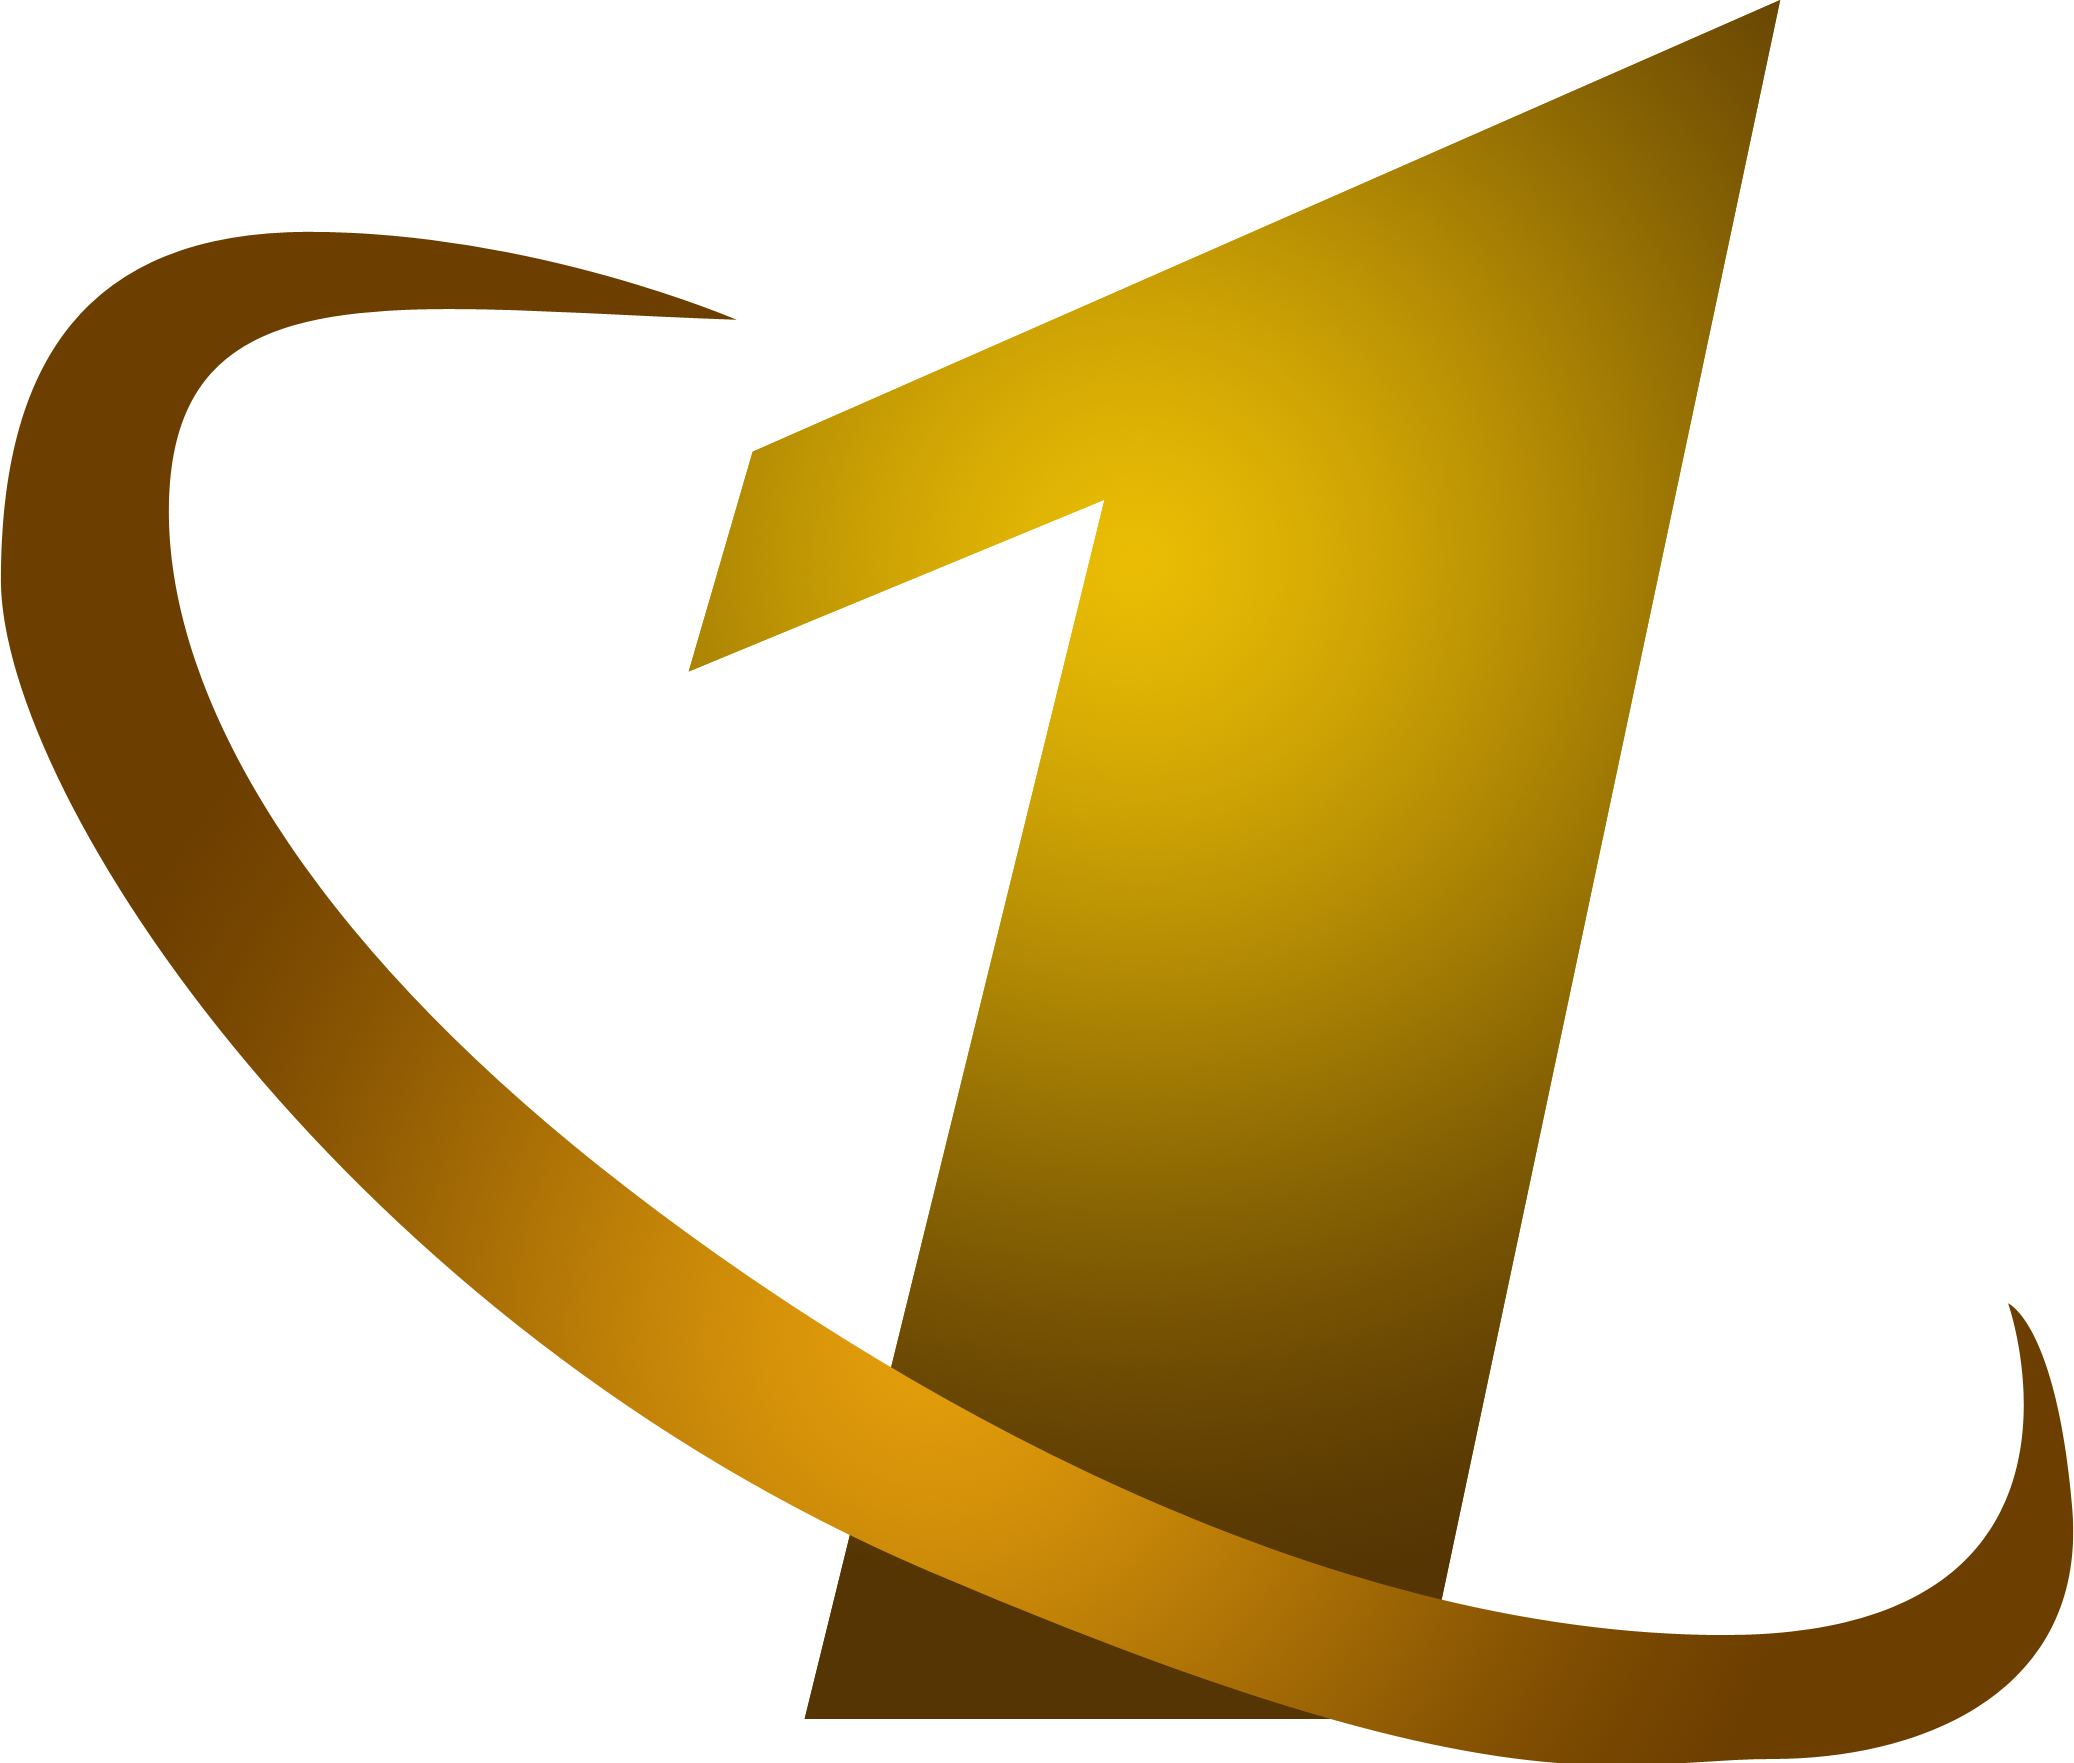 Золотой канал телеканал. ОРТ логотип 1997-2000. Первый канал логотип 1995. ОРТ 1997 логотип. Эмблема канала ОРТ.